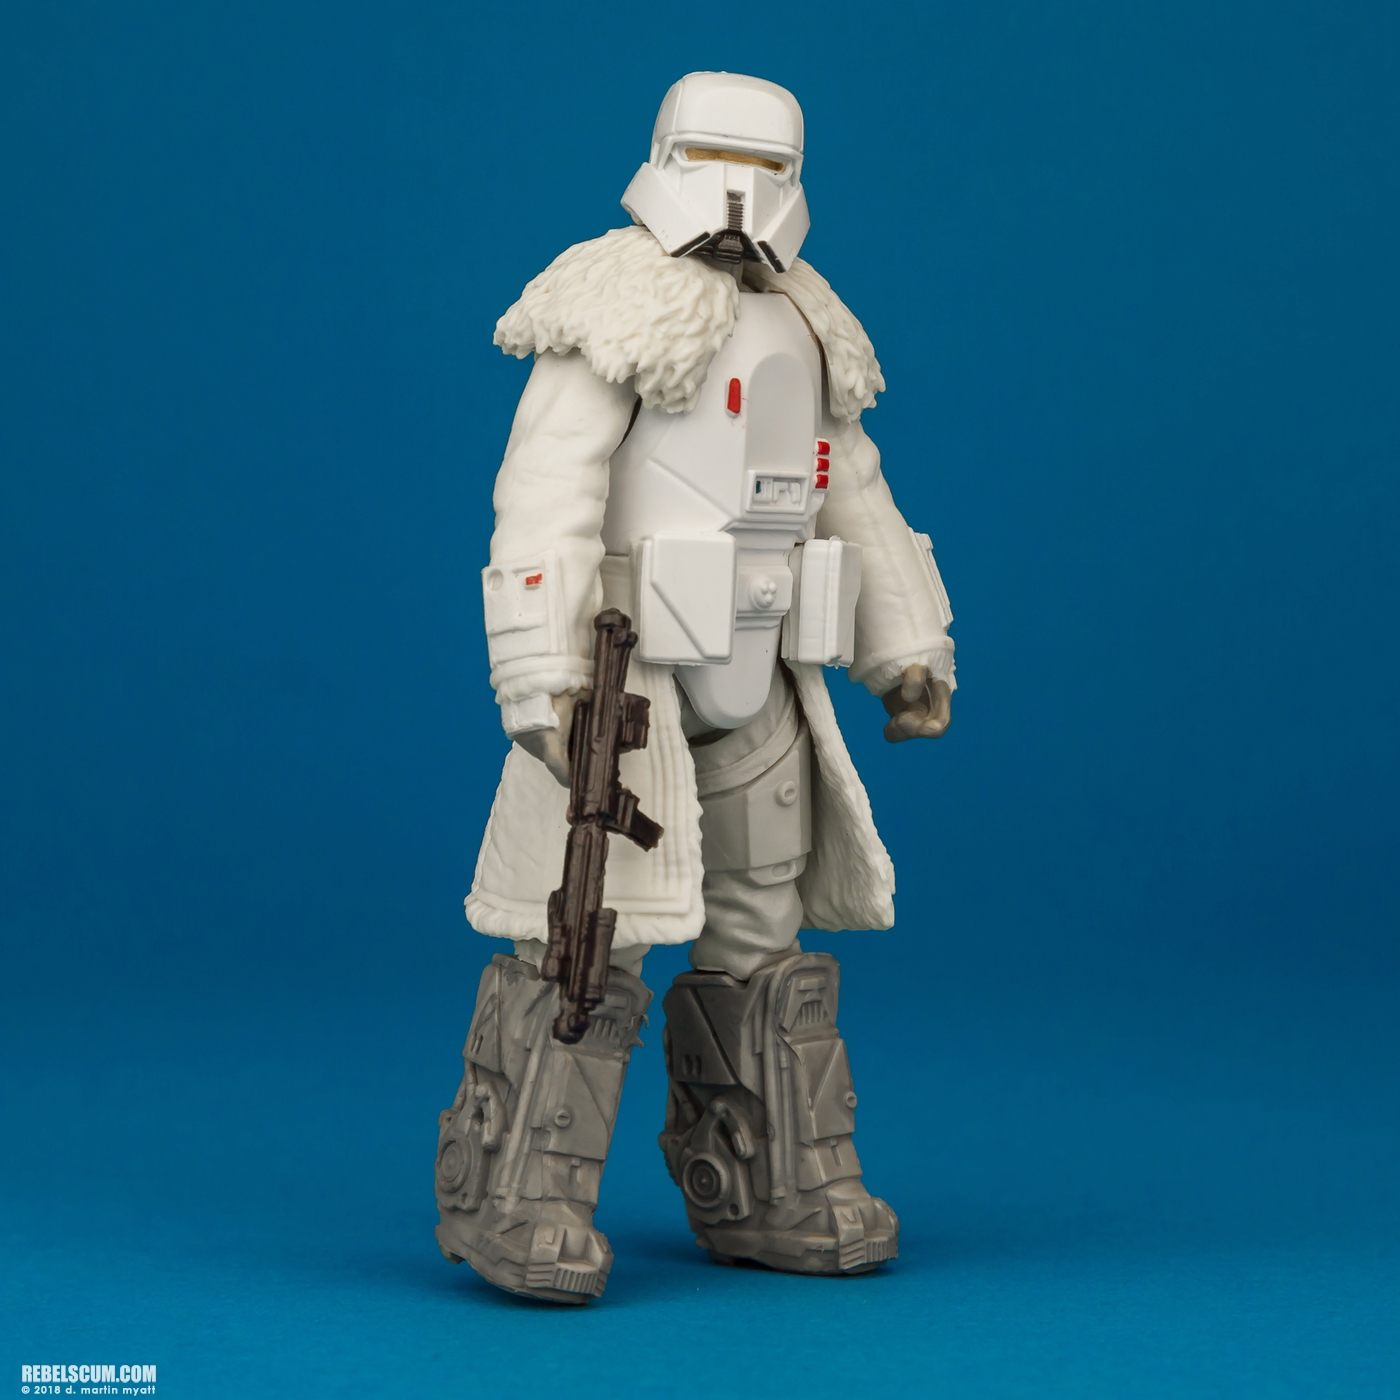 Range-Trooper-Solo-Star-Wars-Universe-ForceLink-2-Hasbro-007.jpg